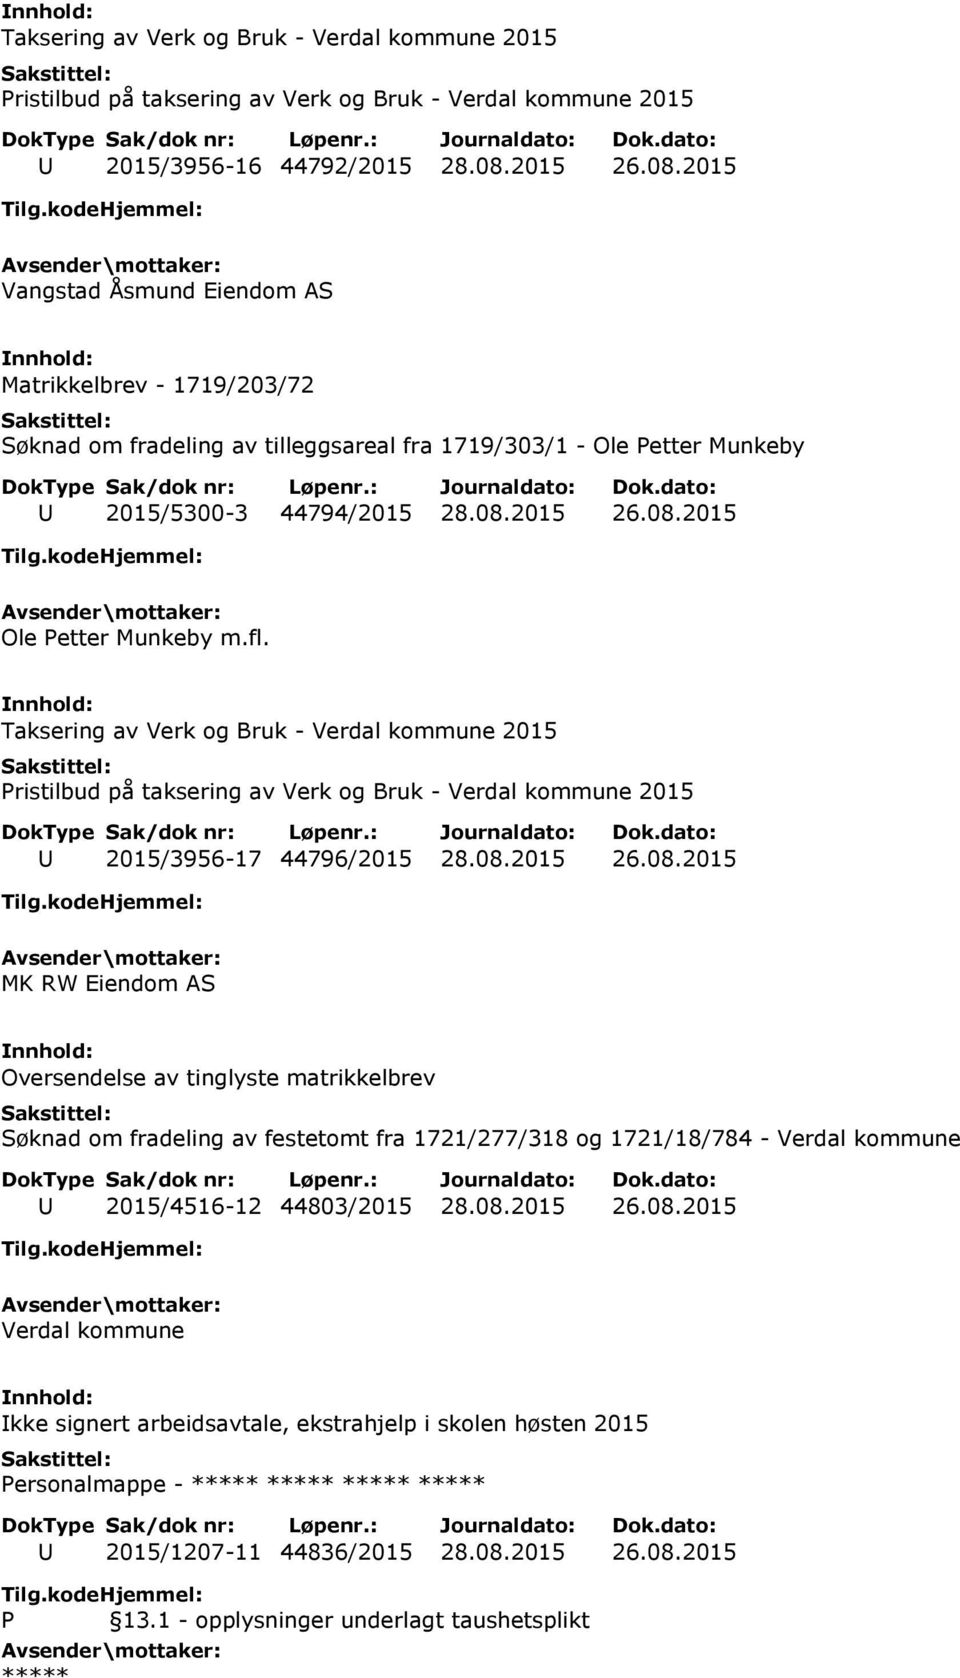 fl. Taksering av Verk og Bruk - Verdal kommune 2015 Pristilbud på taksering av Verk og Bruk - Verdal kommune 2015 U 2015/3956-17 44796/2015 28.08.